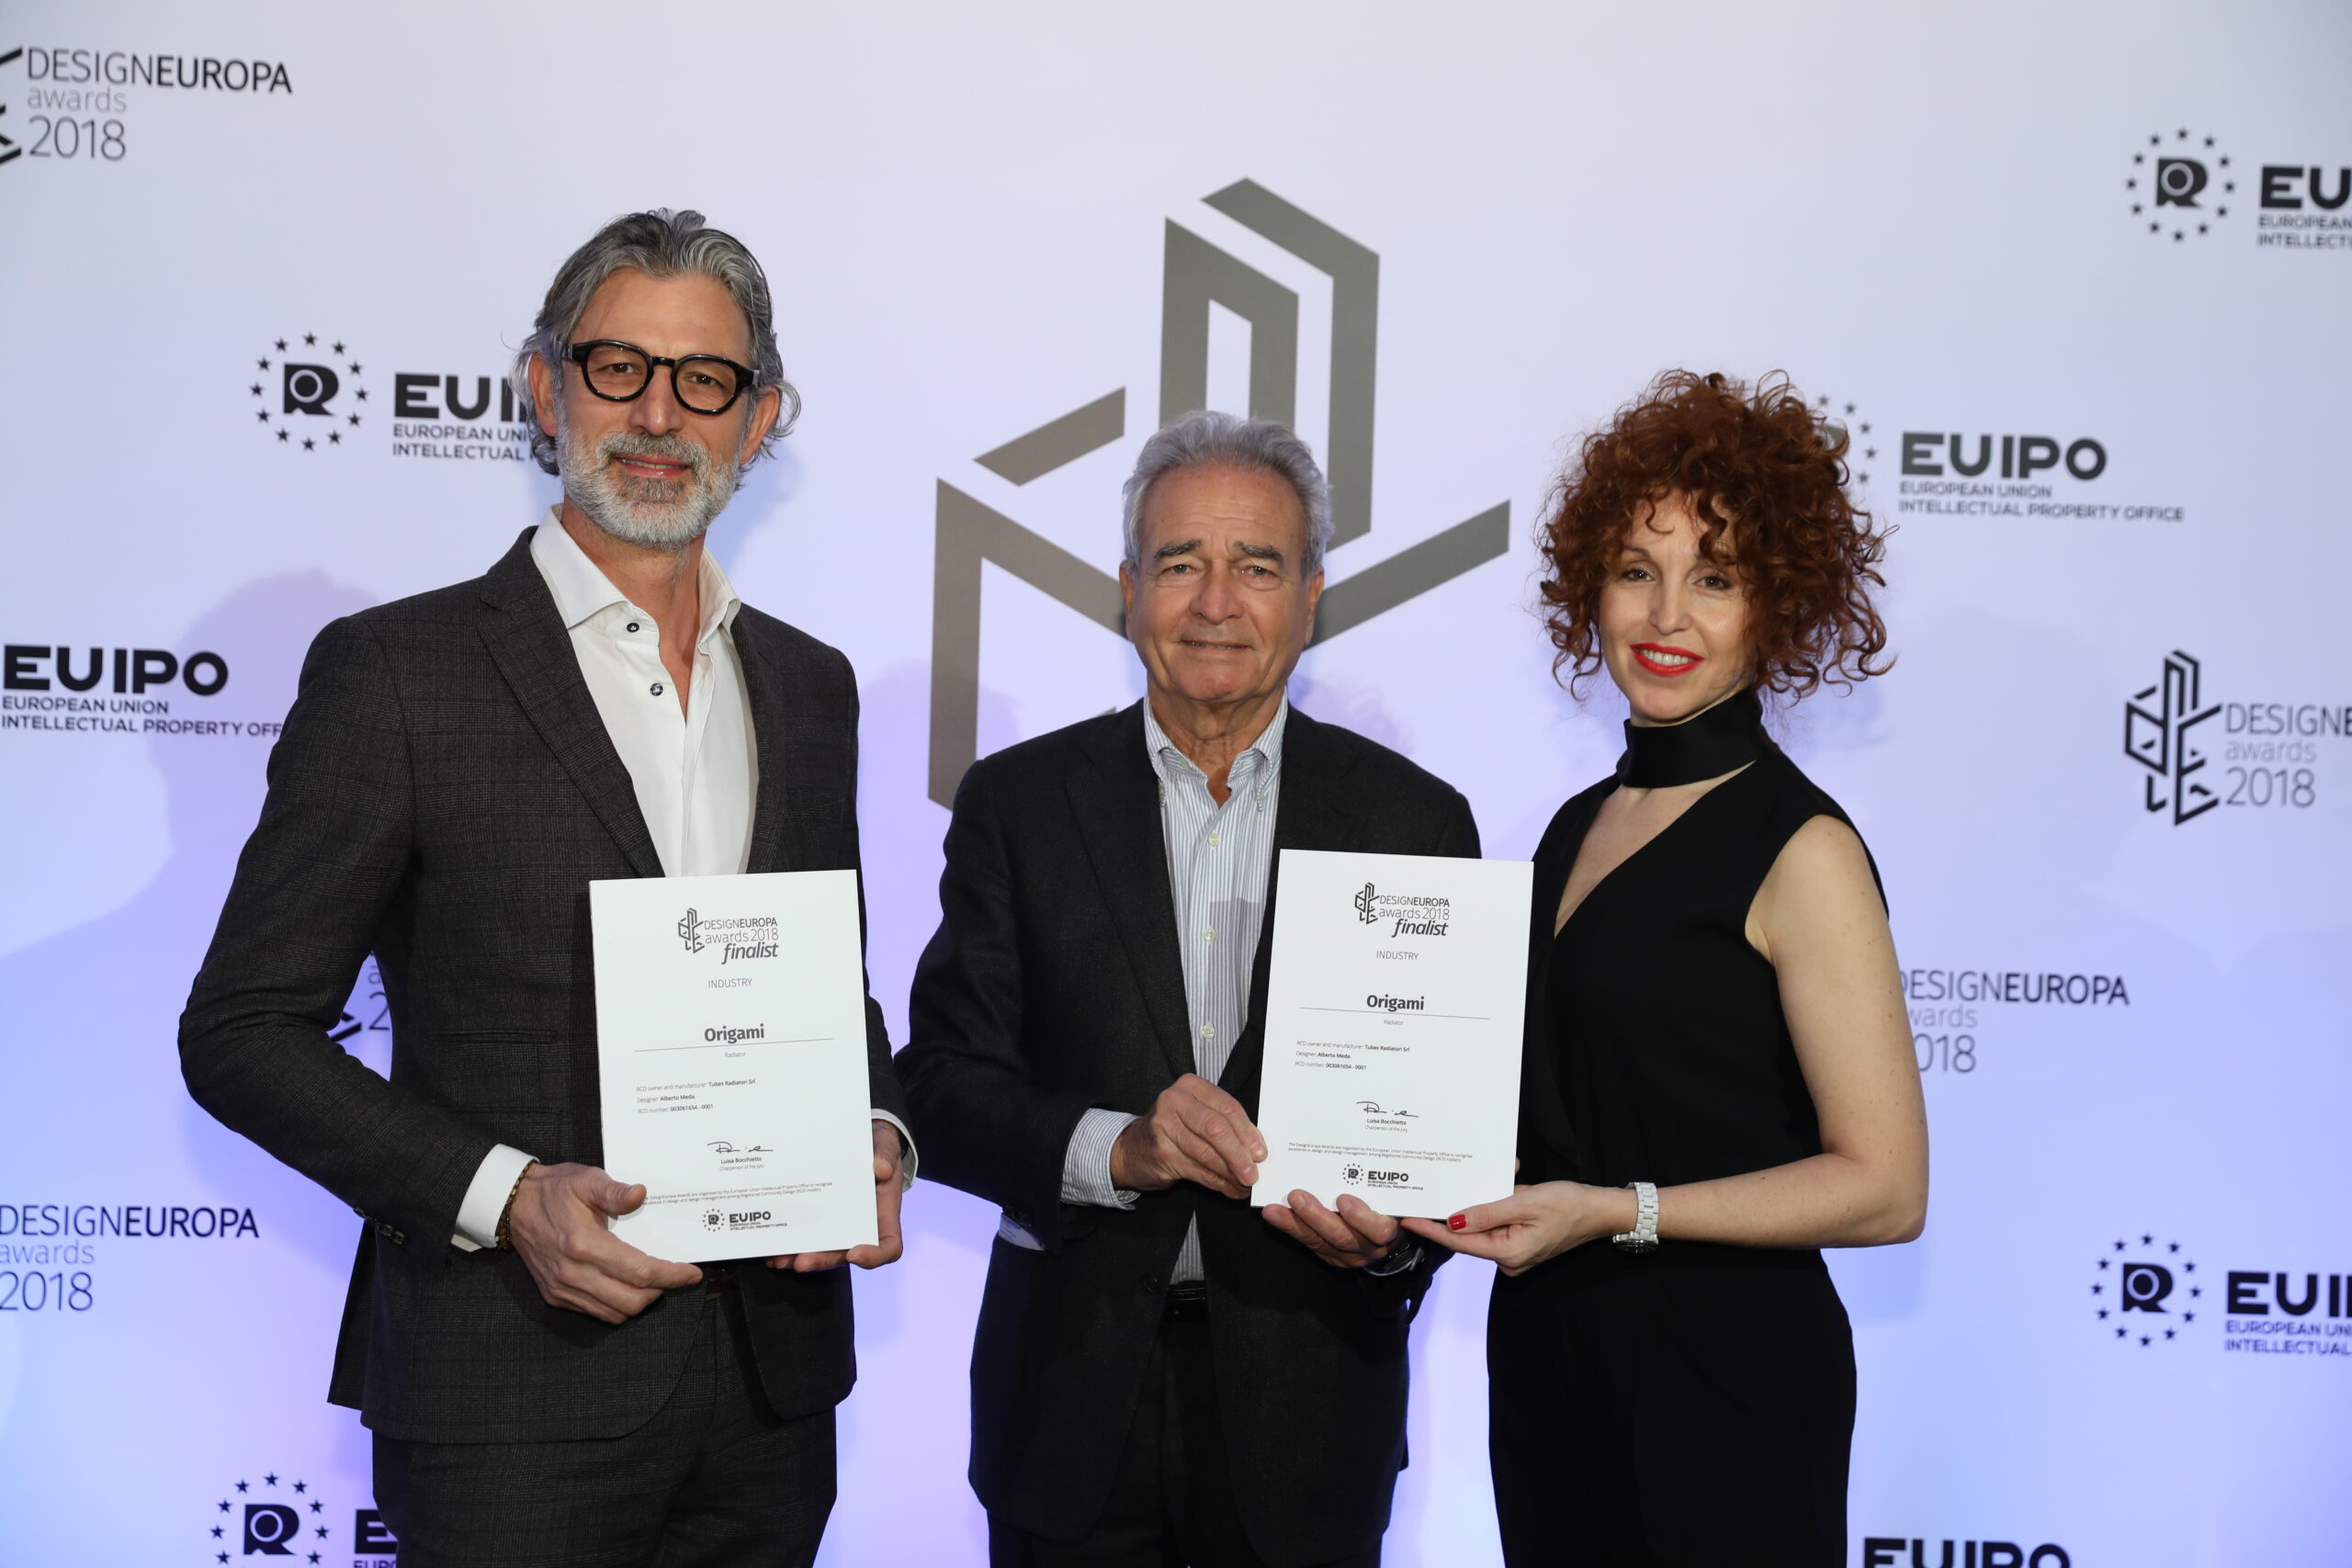 Origami ist Finalist der Design Europa Awards 2018-ORIGAMI FINALIST_2018_european_design_award